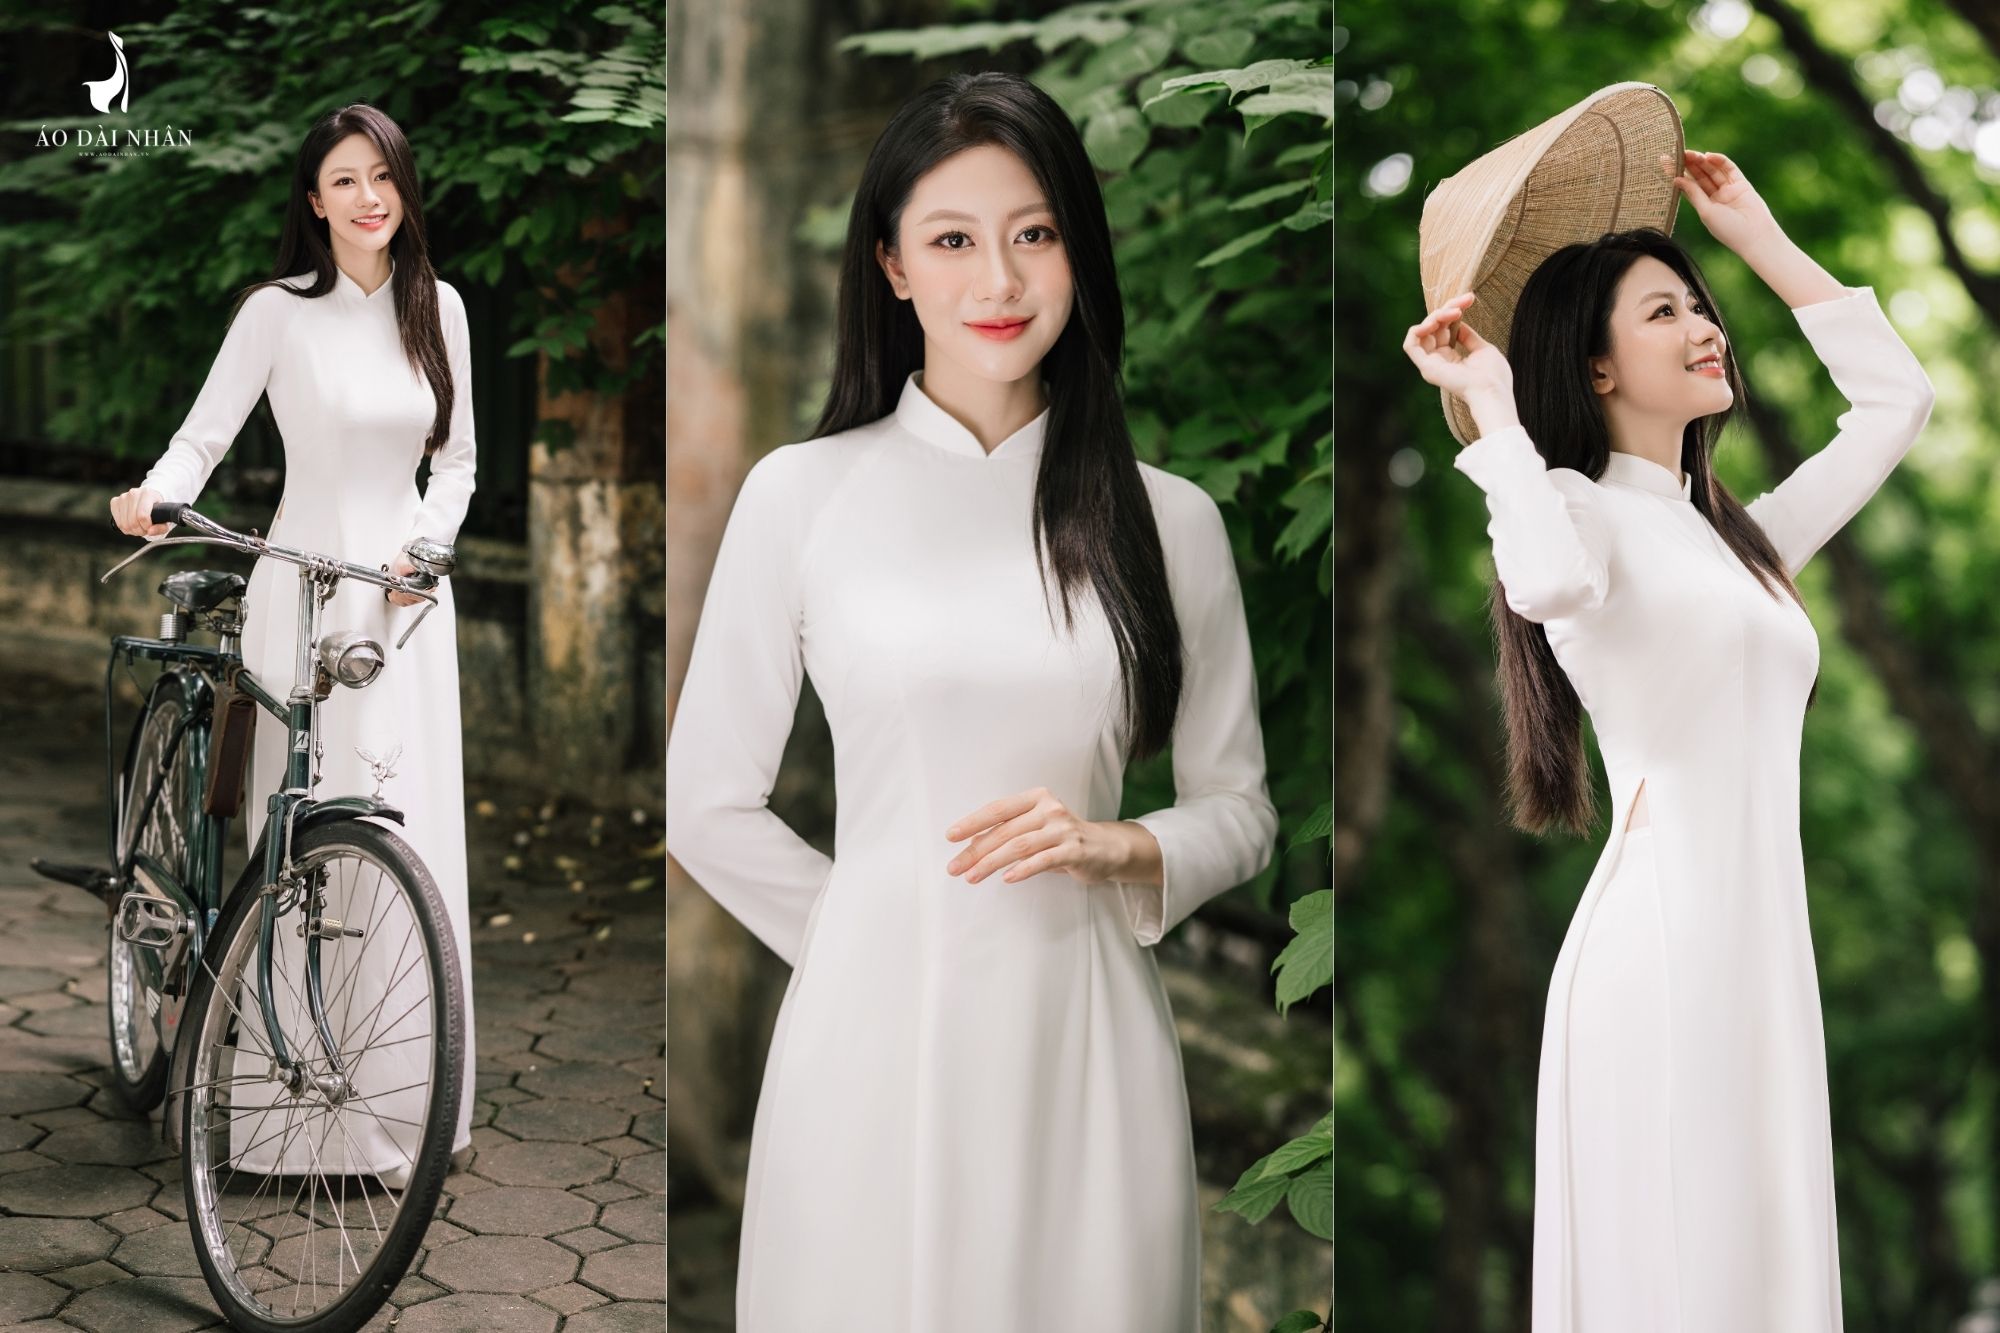 Áo Dài Nhân – thương hiệu cho thuê áo dài uy tín hàng đầu tại Hà Nội ảnh 3